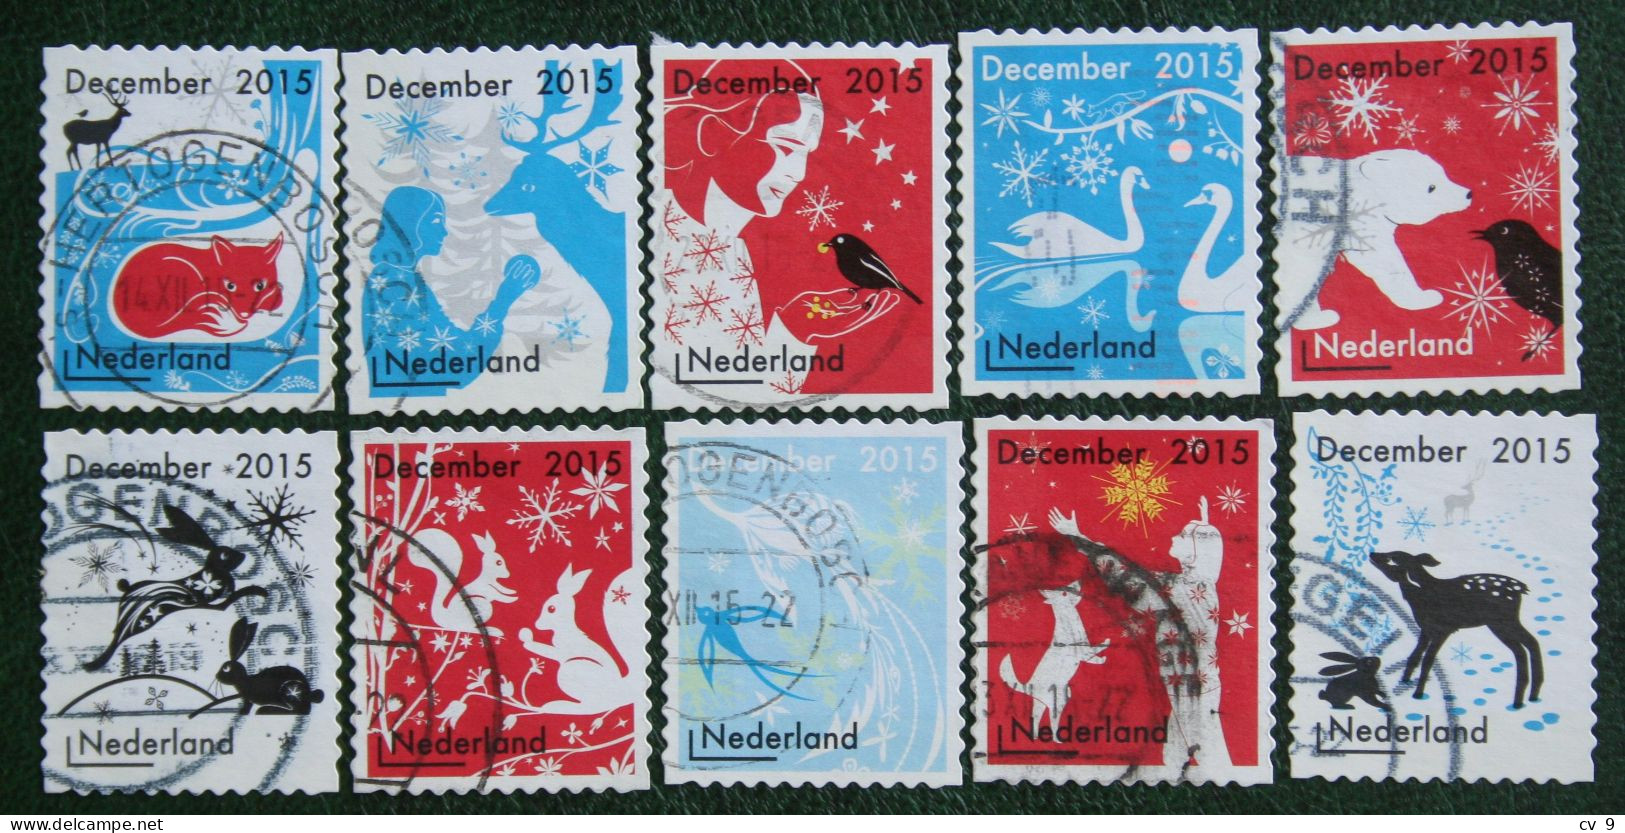 Decemberzegels Weihnachten Christmas Noel NVPH 3363-3372 (Mi 3424-3433) 2015 Gestempeld / USED NEDERLAND / NIEDERLANDE - Gebraucht